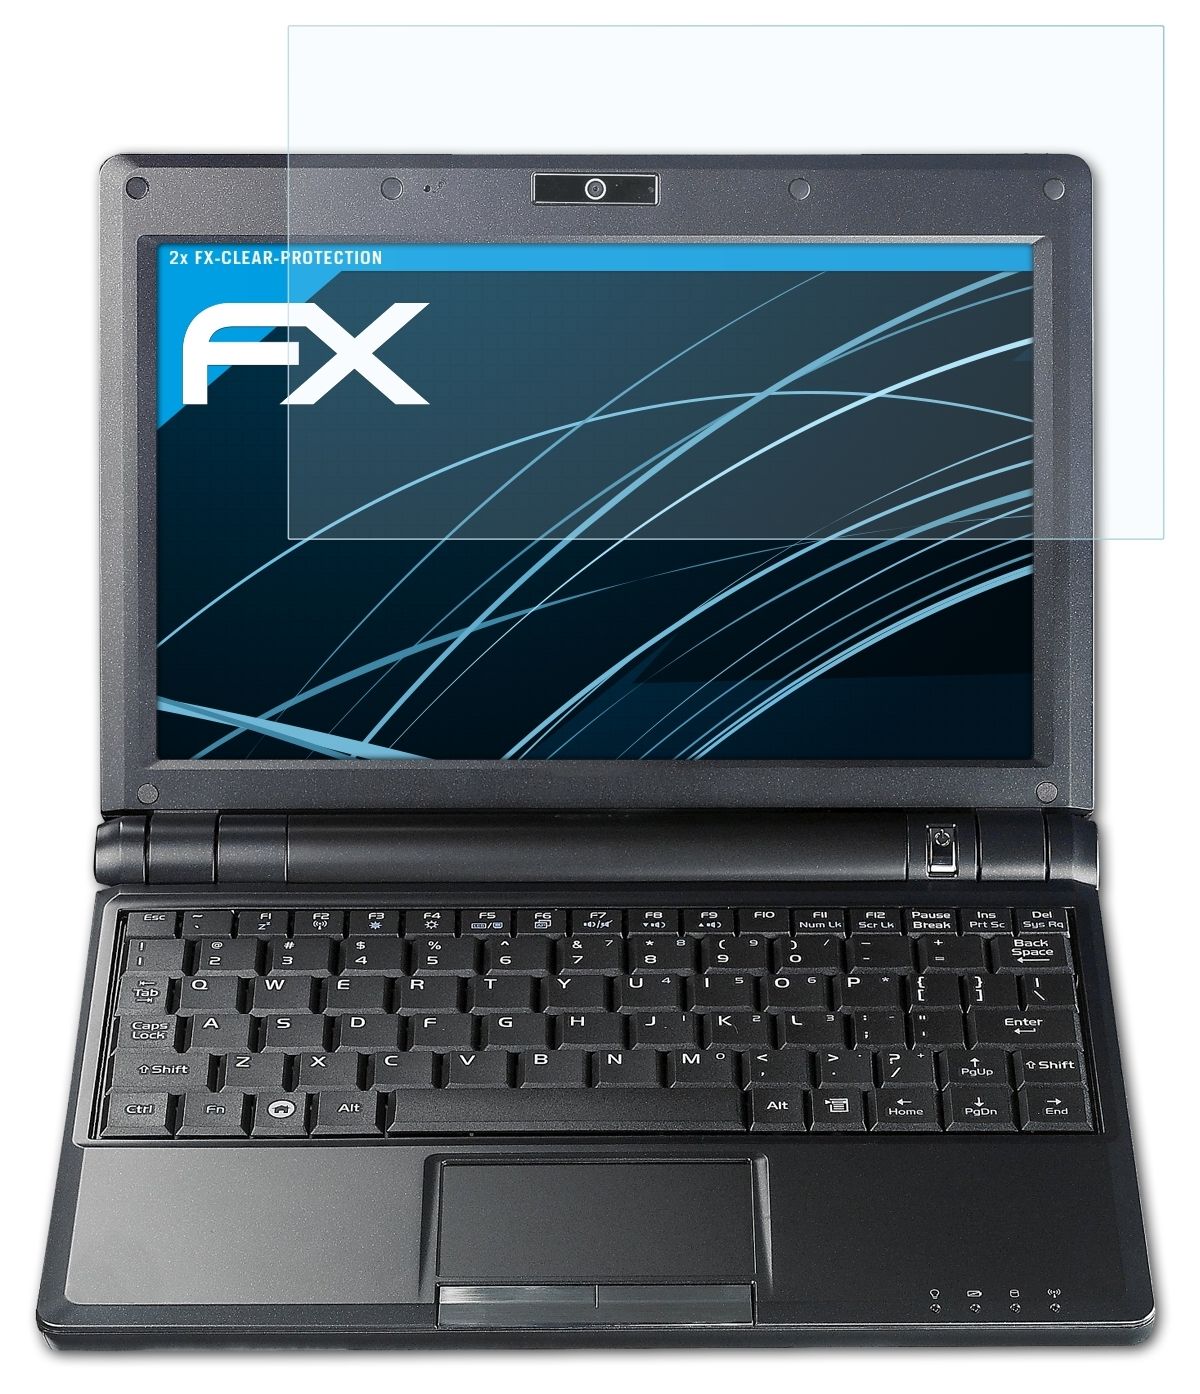 2x Displayschutz(für Asus 900A) ATFOLIX FX-Clear Eee PC